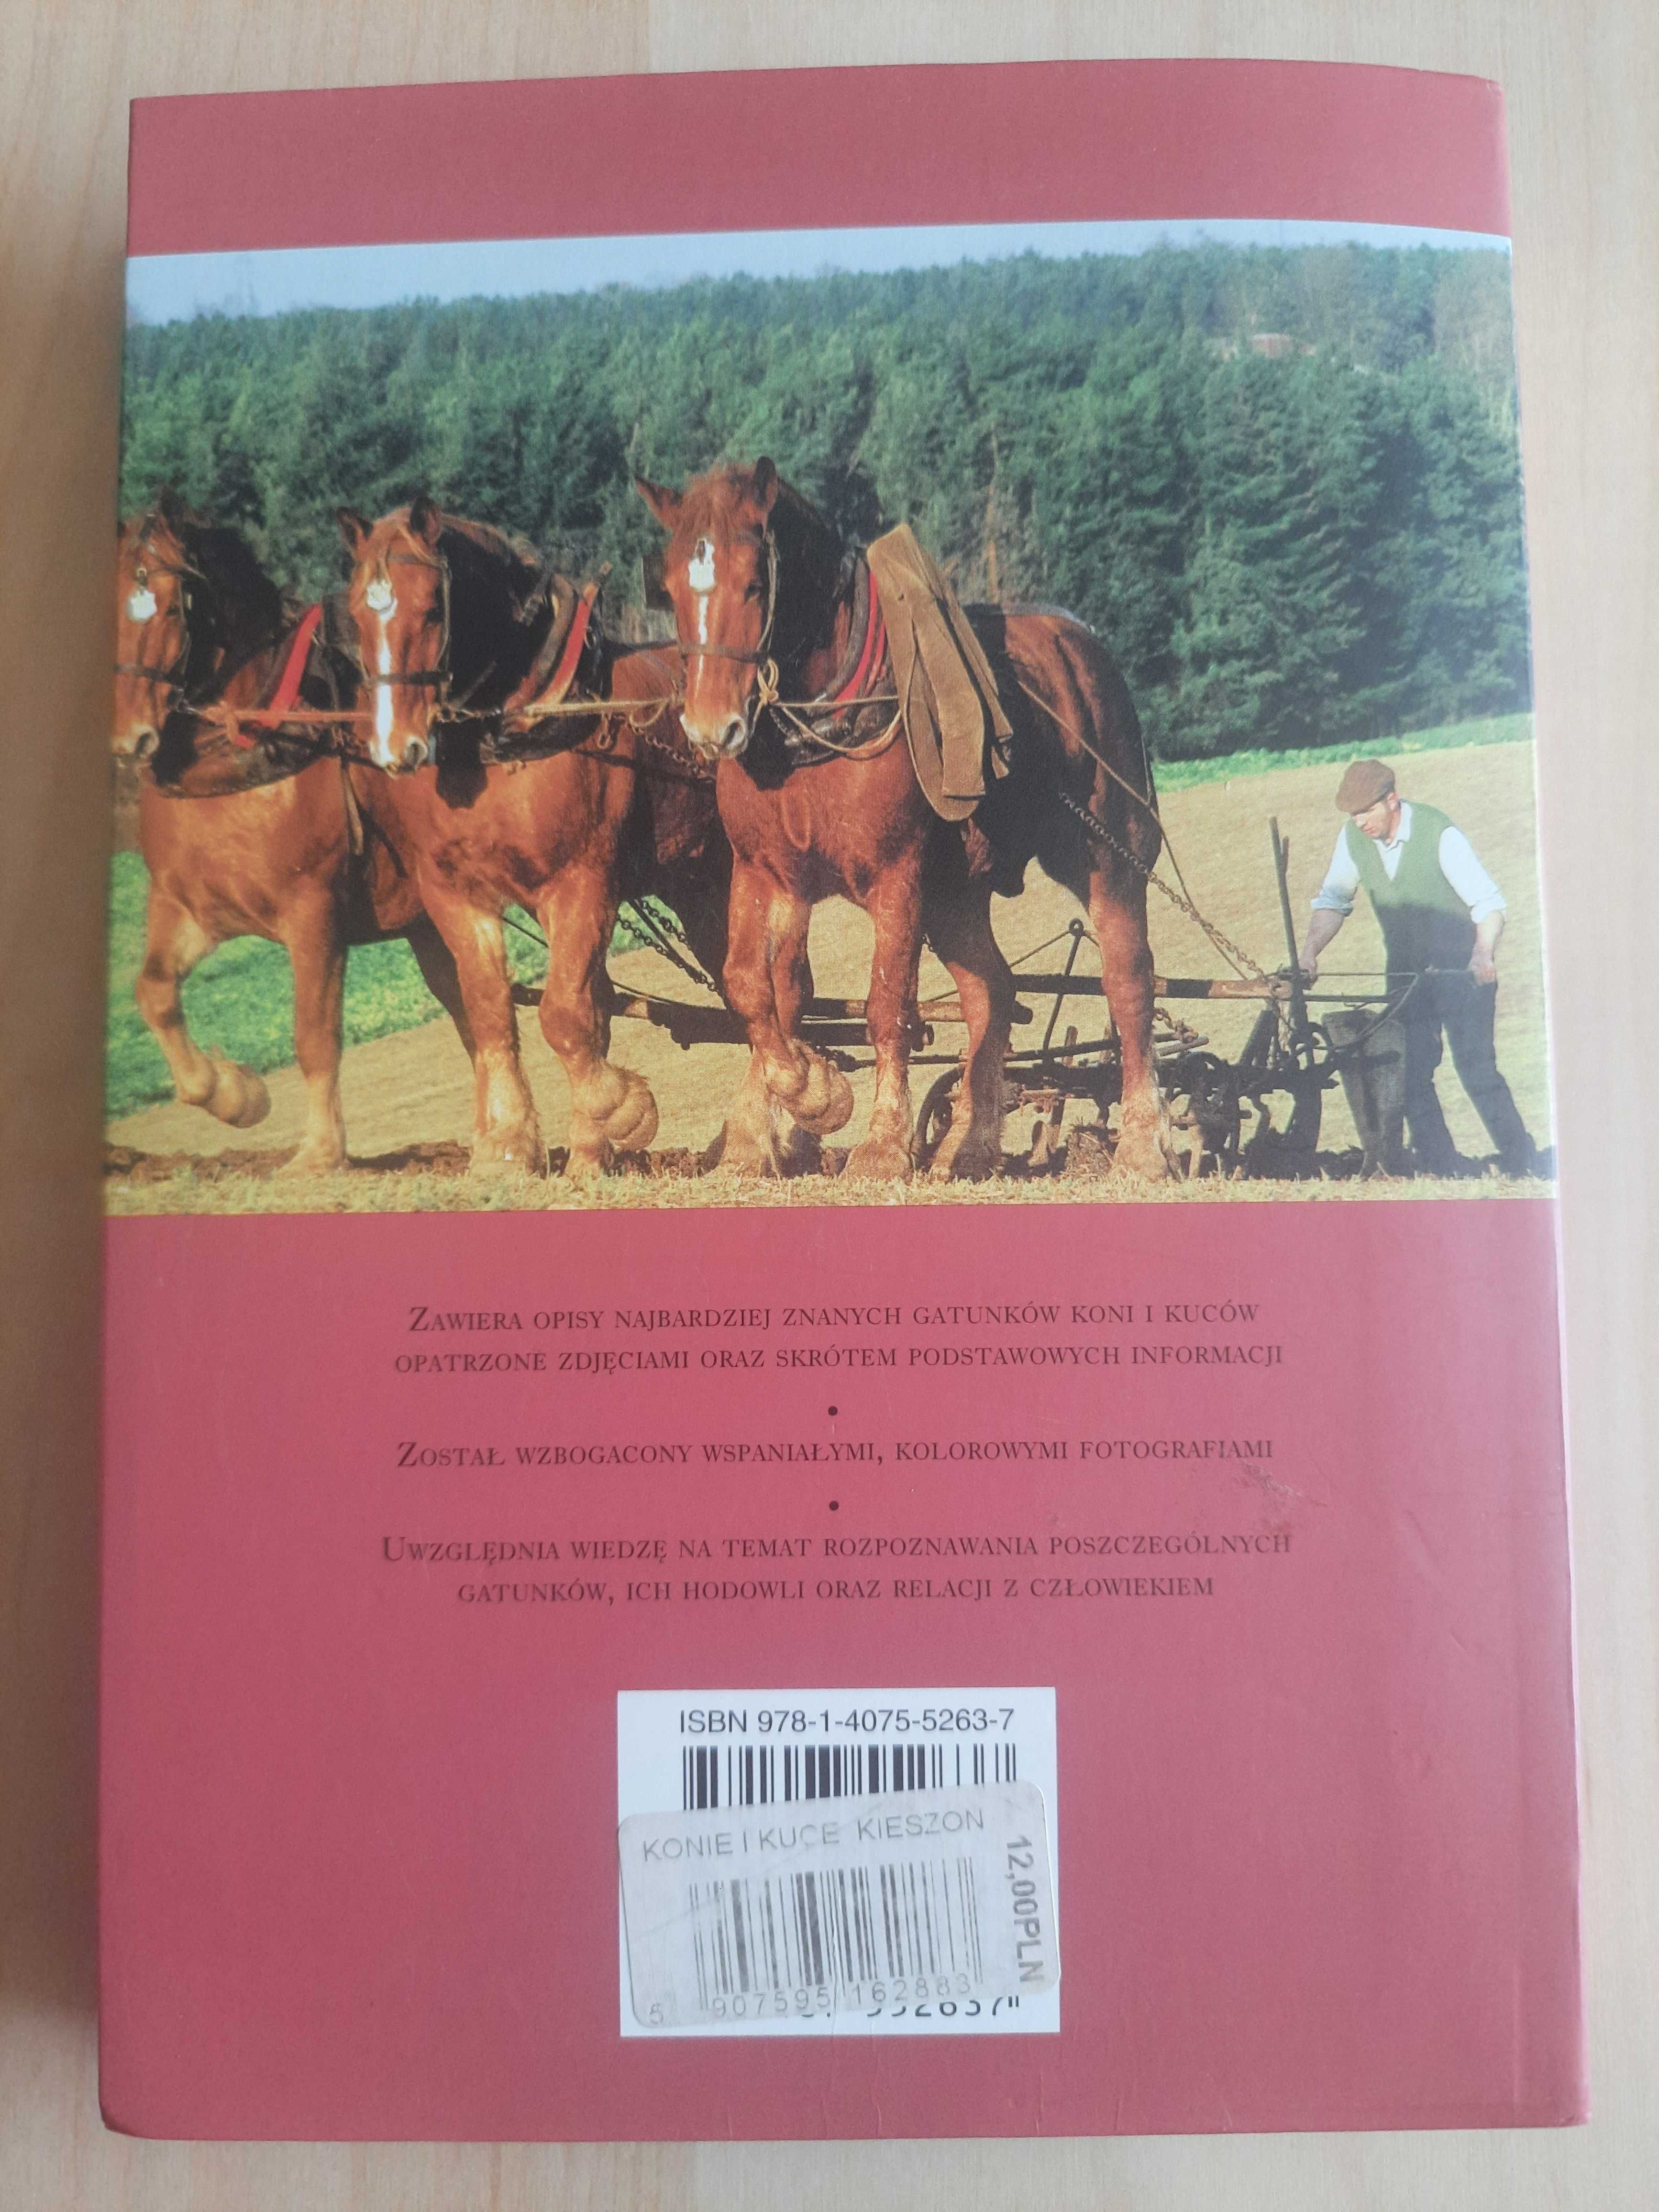 Książka "Konie i kuce - Kieszonkowy przewodnik" - Corinne Clark